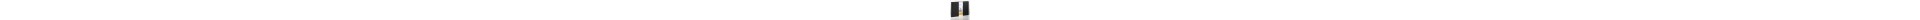 Album dessin  HAHNEMUHLE D&S - 140g (80f) - F:21 x 29,7 cm - Couverture....Relié  Couverture:Noir reliure:PAYSAGE